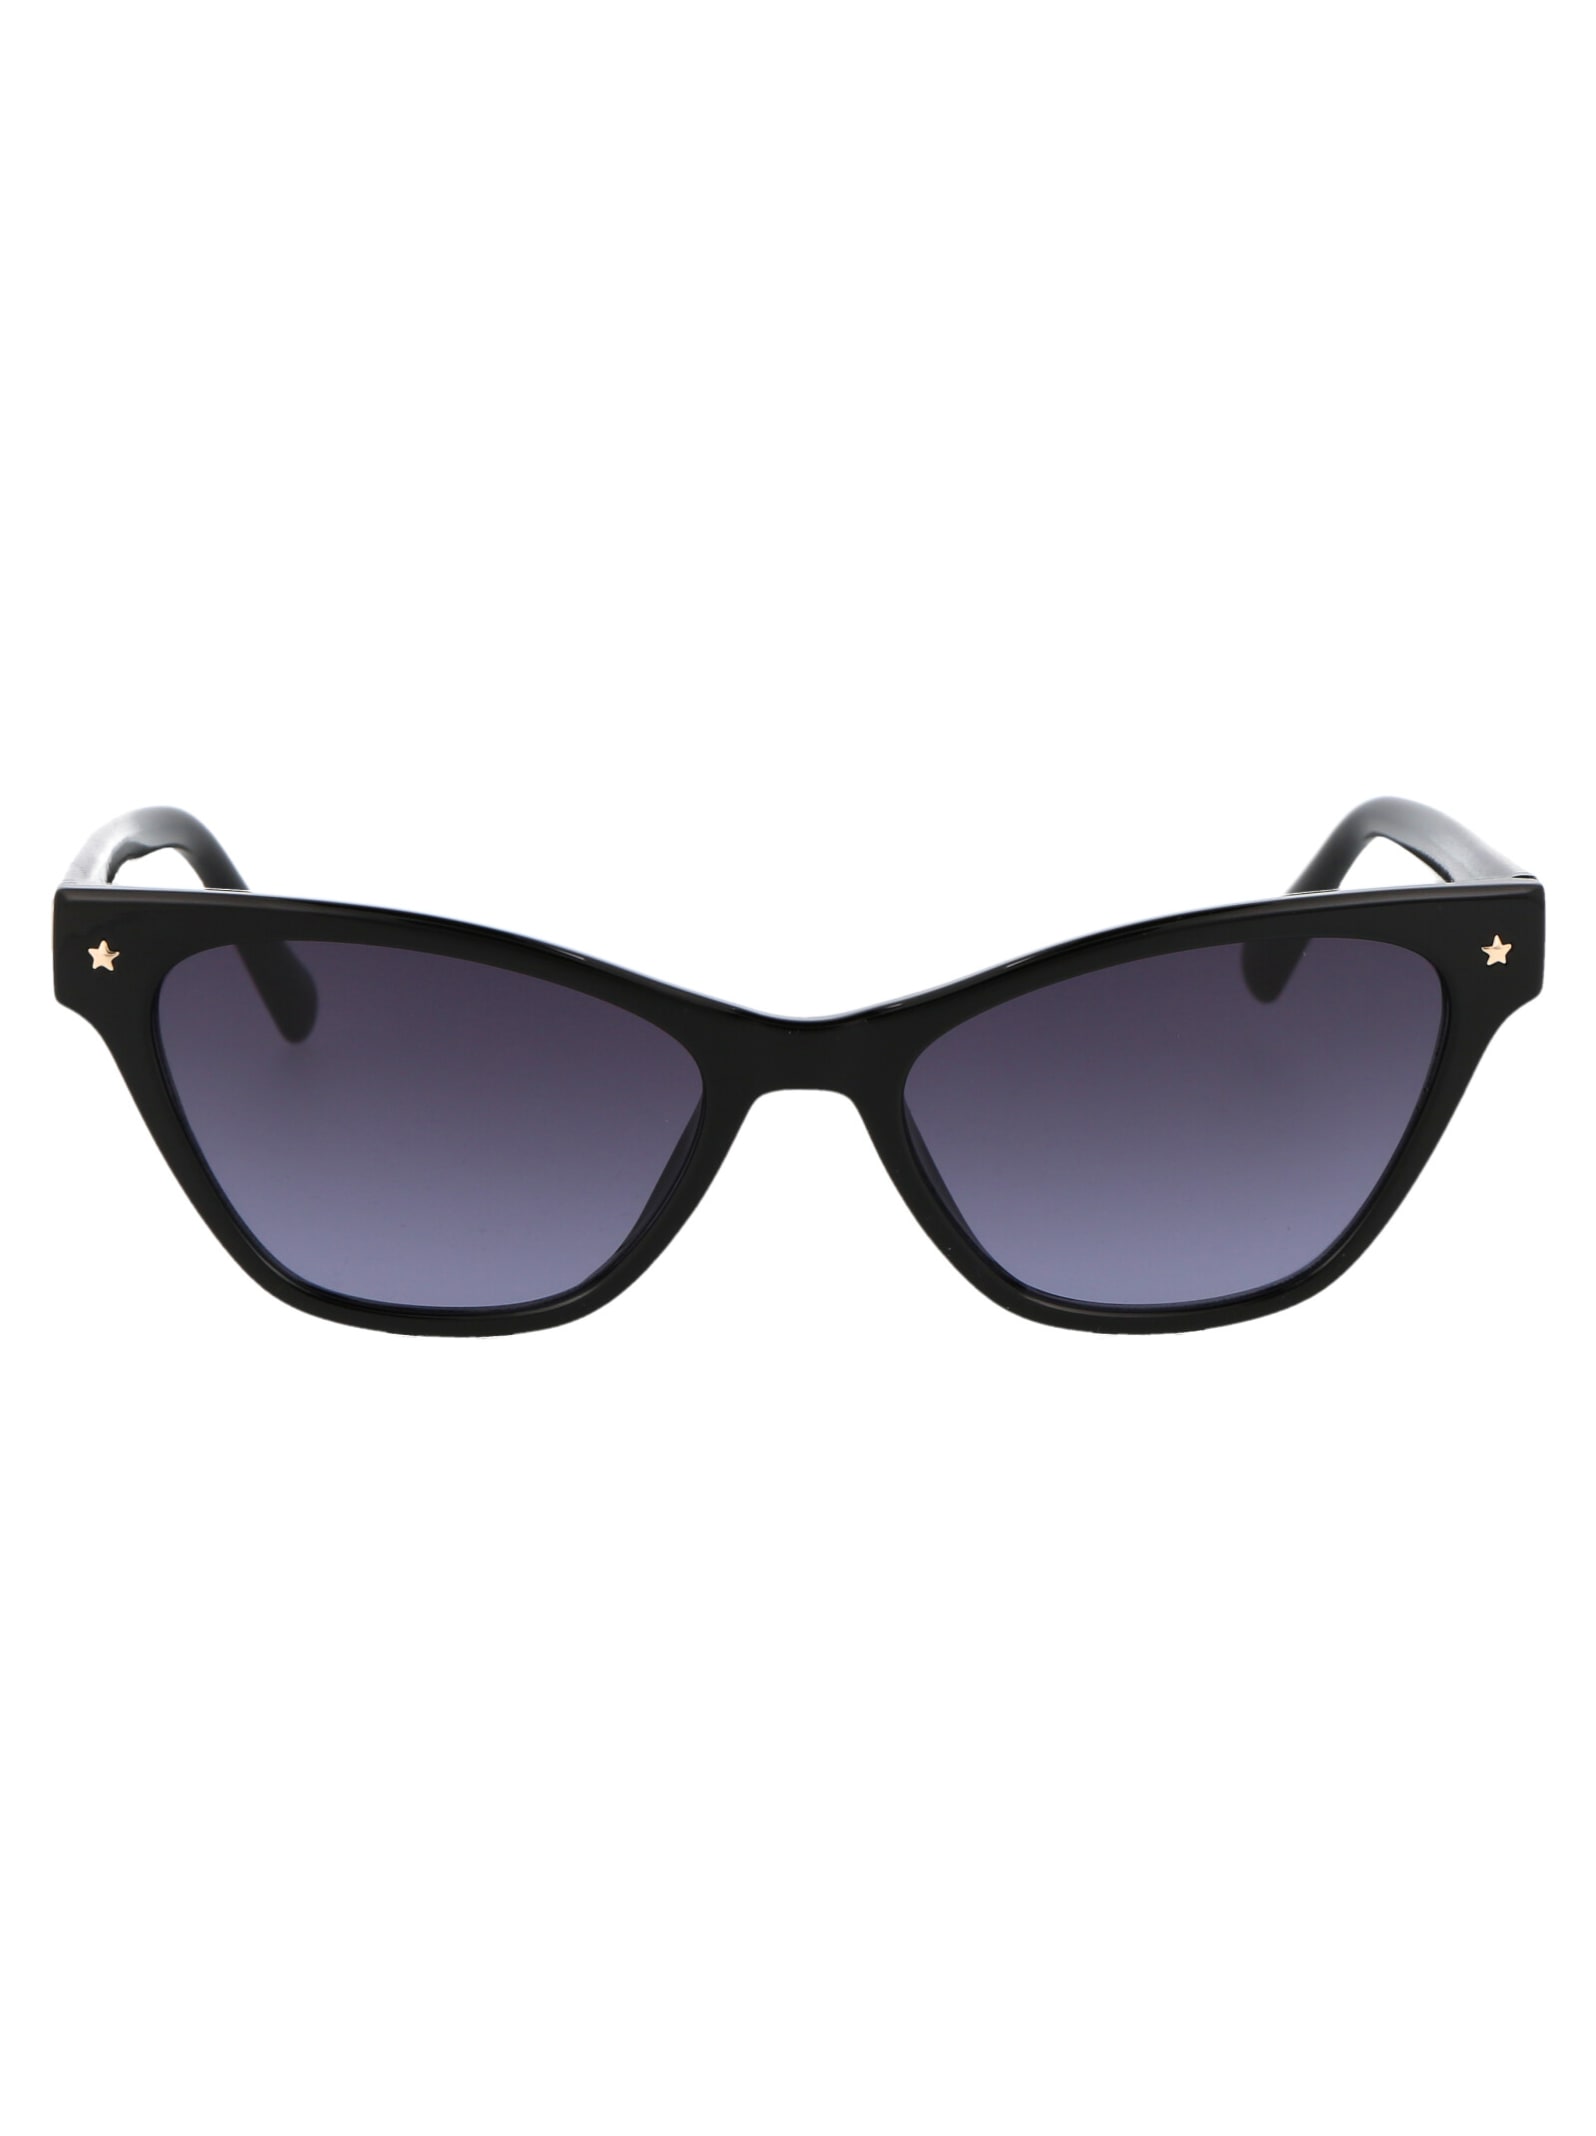 Cf 1020/s Sunglasses